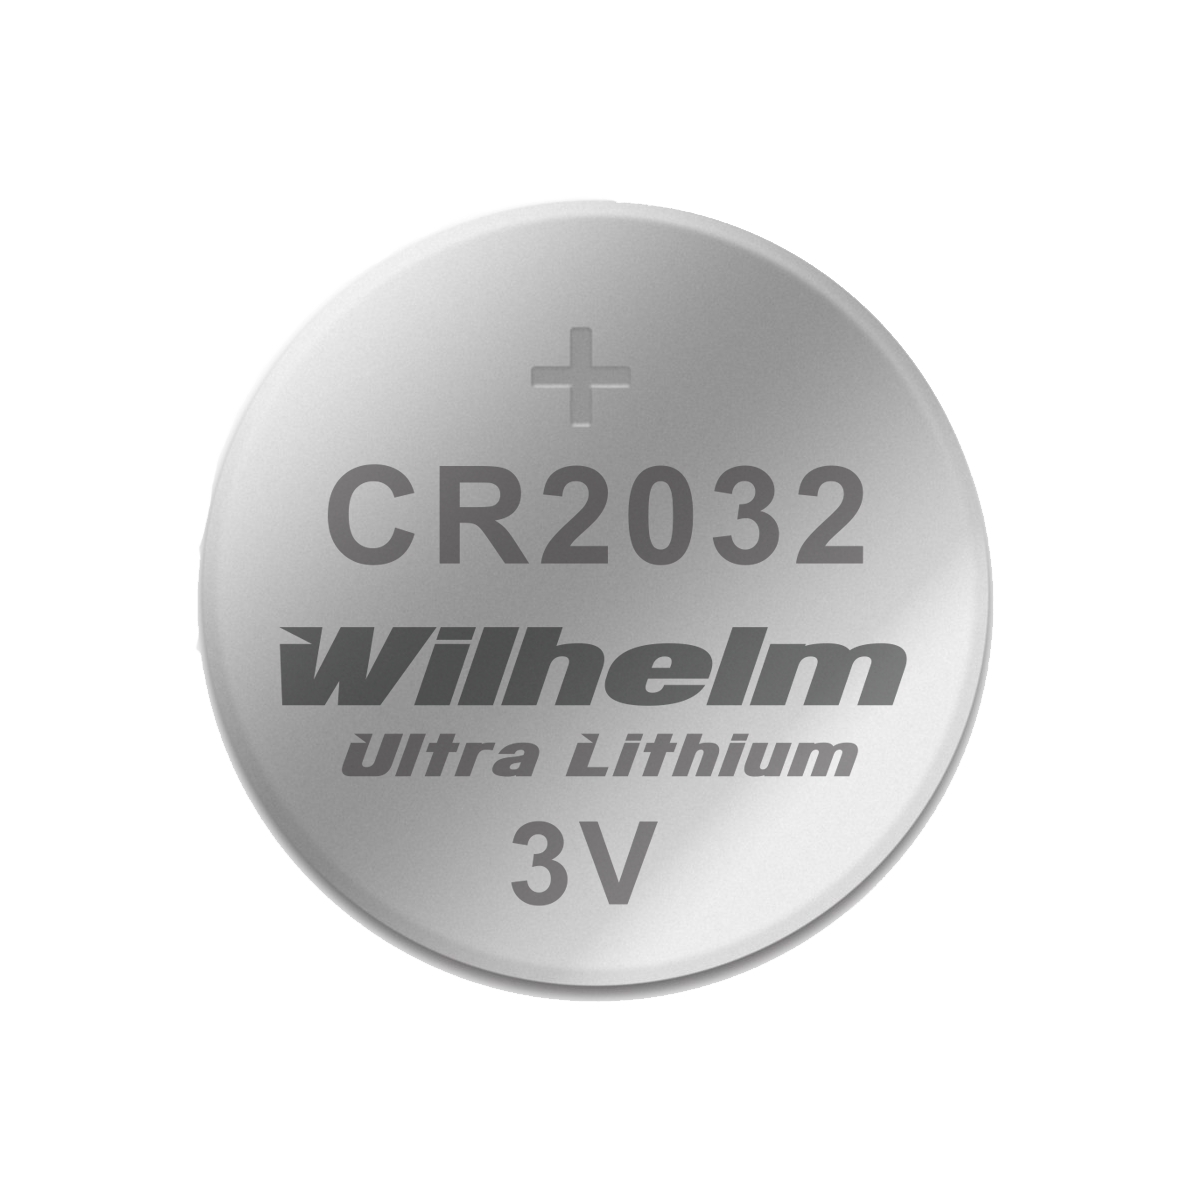 CR2032 Lithium